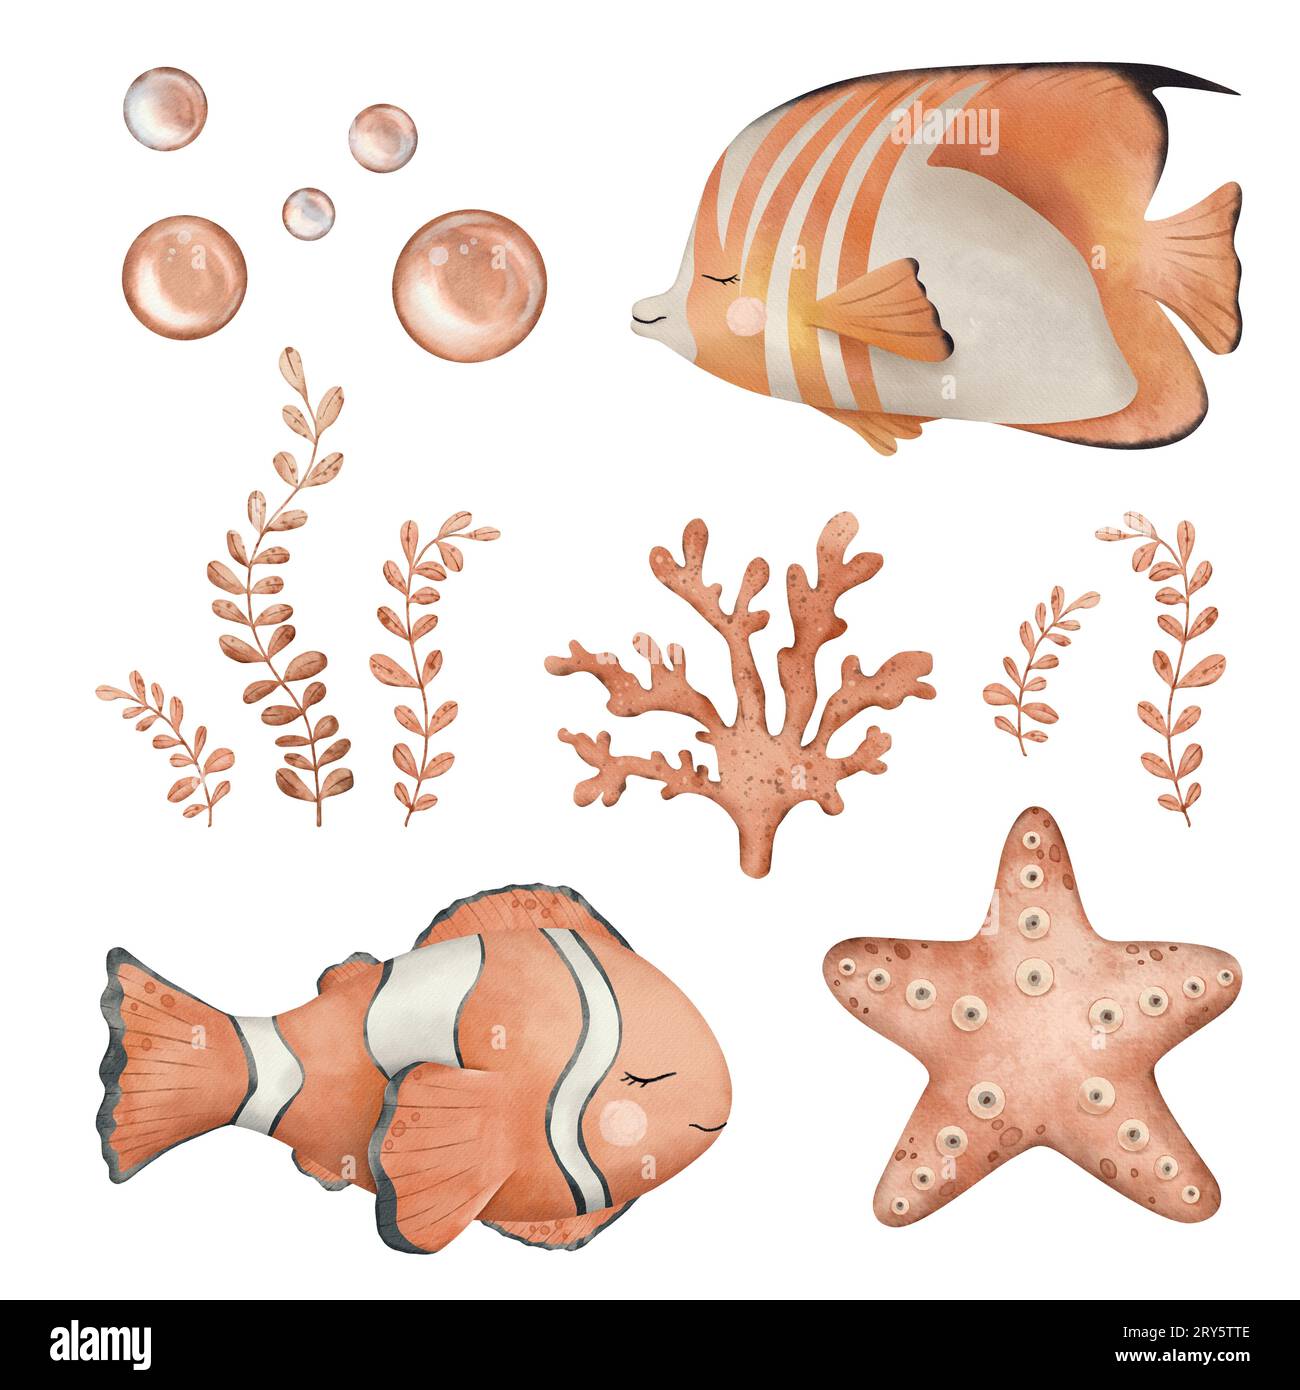 Ensemble de poissons anémonefish ou clownfish en couleur orange, noir et blanc et étoiles de mer, corail marin, algues marines. Illustration à l'aquarelle dessinée à la main de la mer Banque D'Images